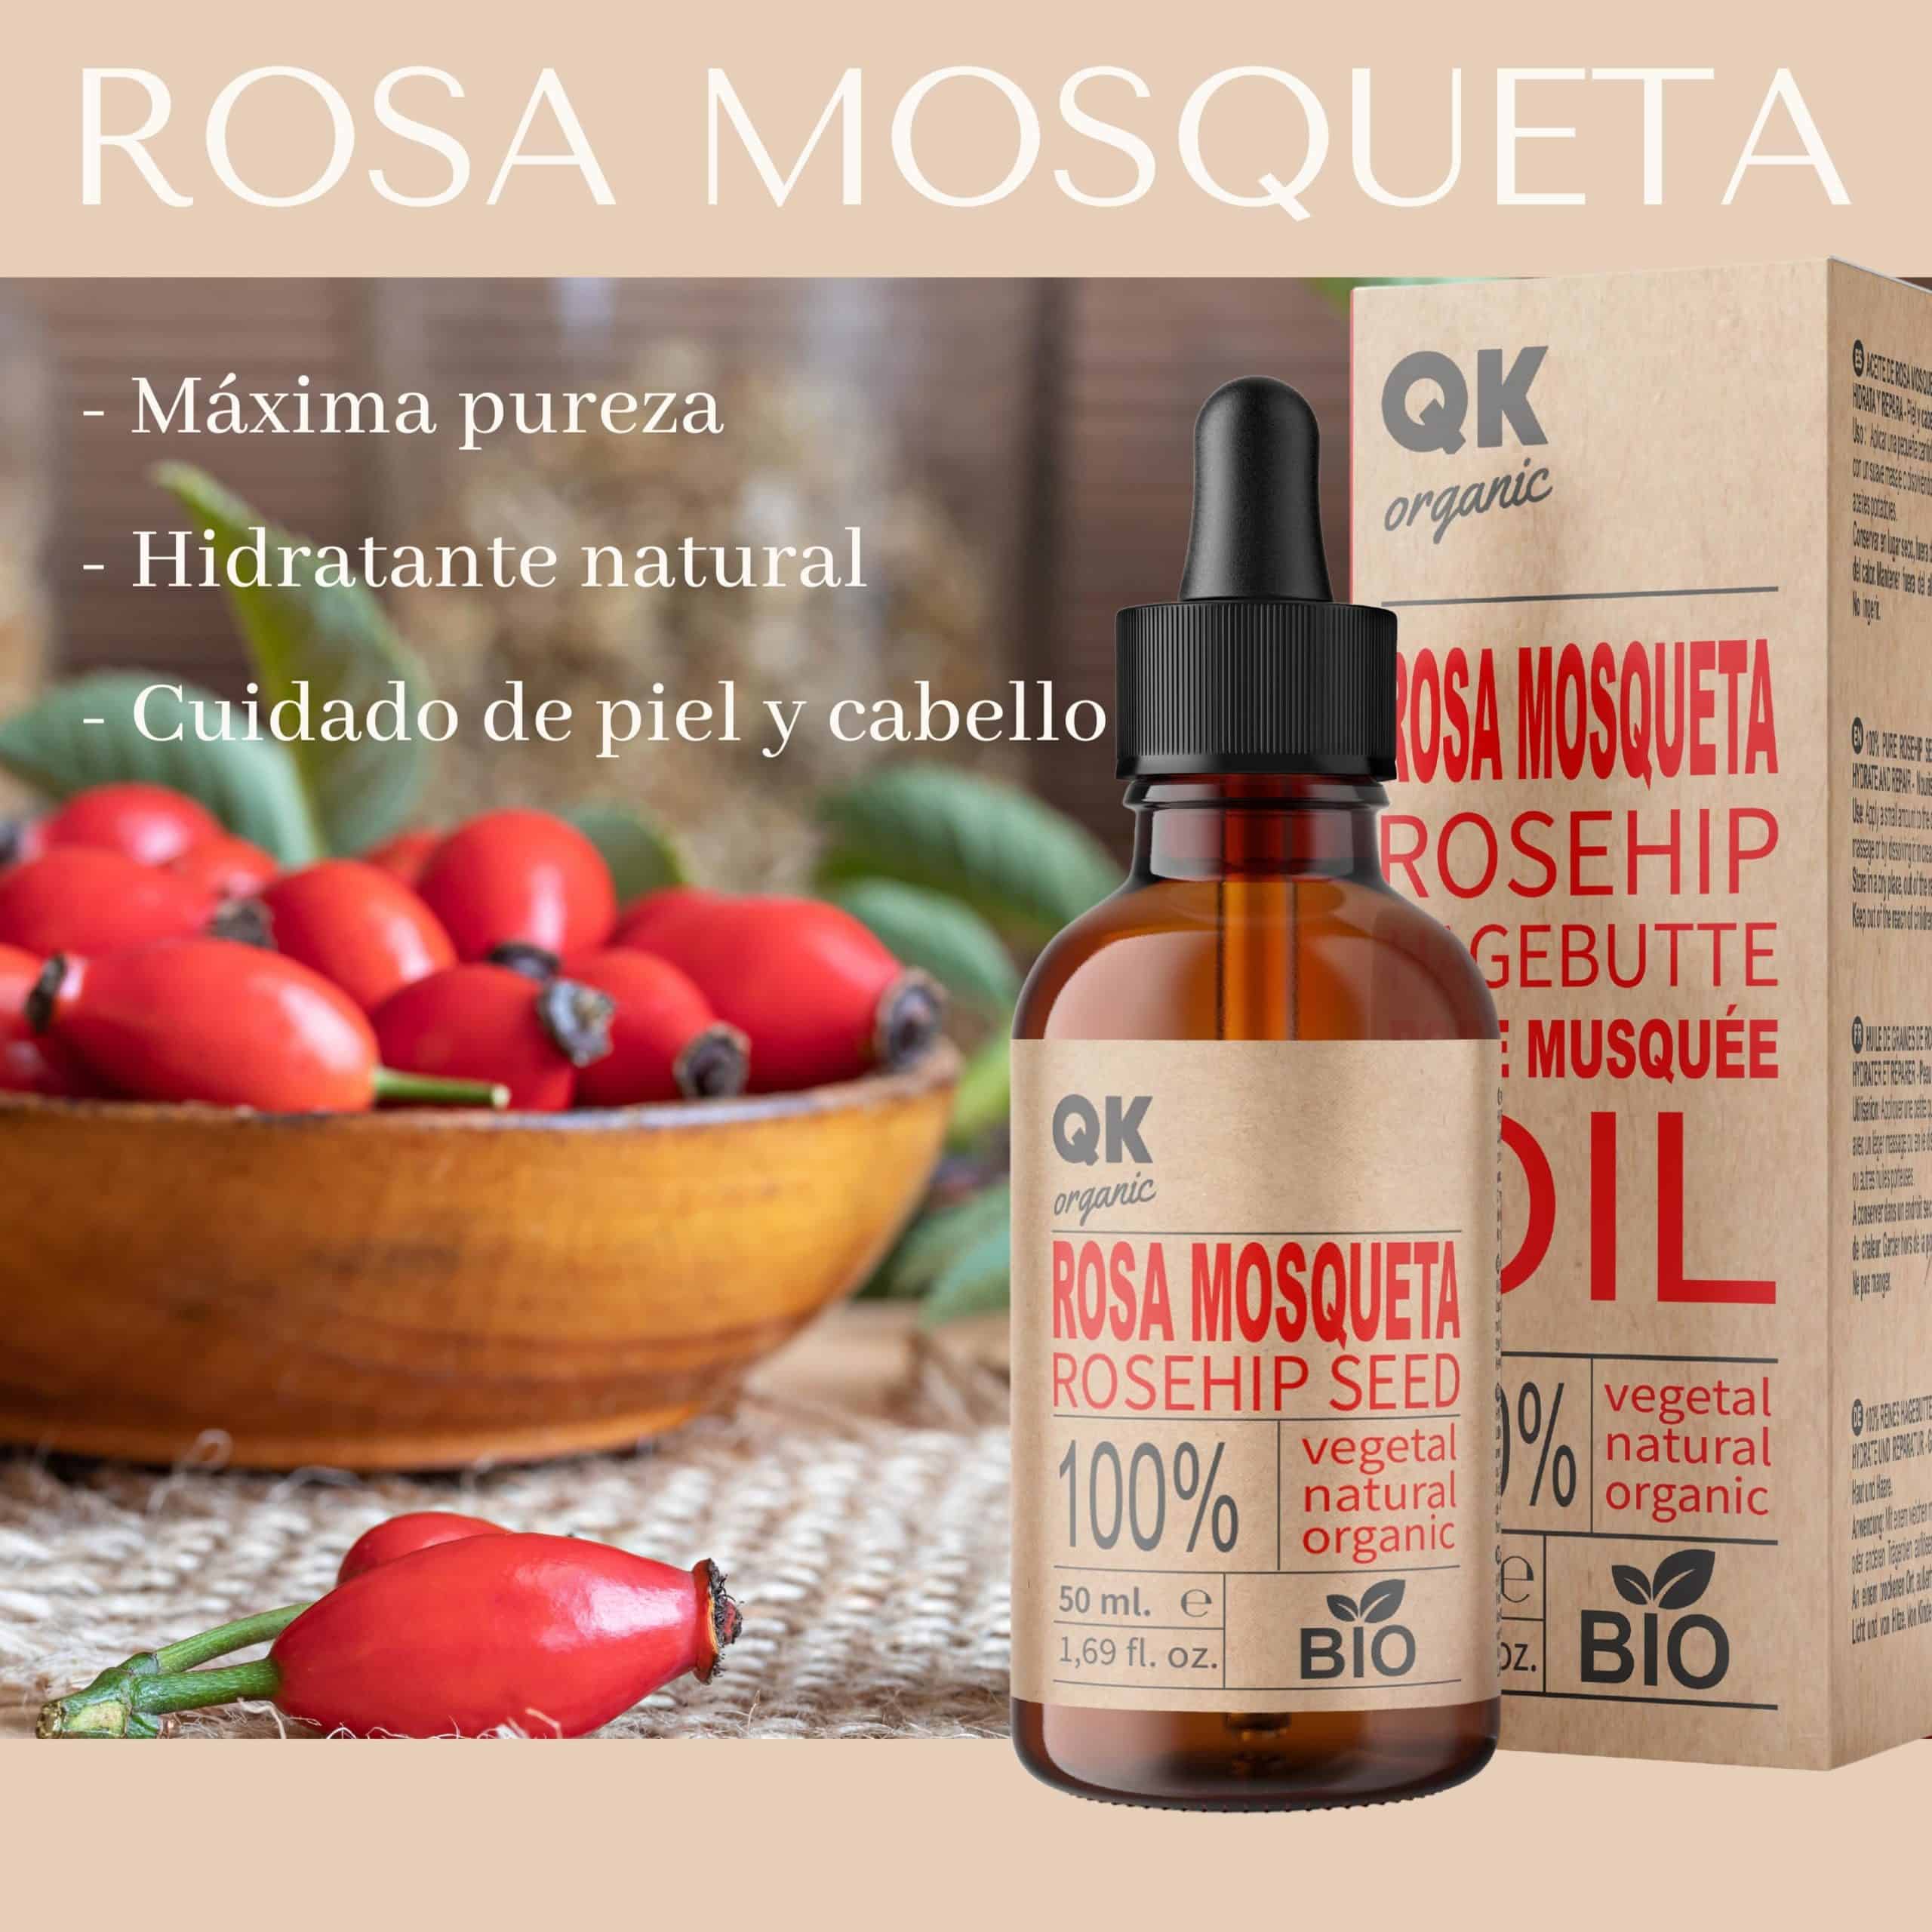 Aceite de Rosa Mosqueta - Gaia Productos Naturales